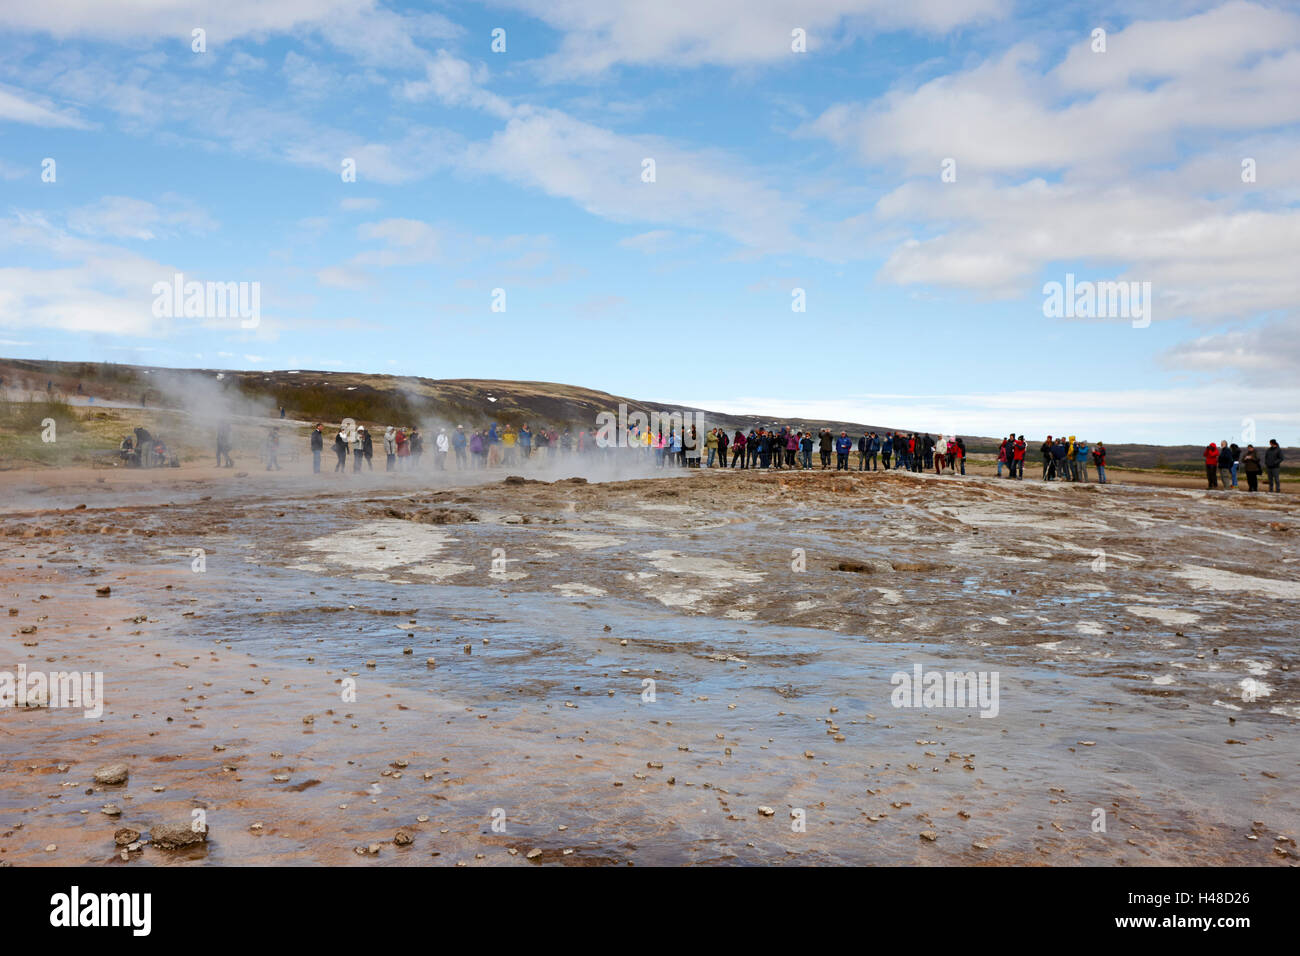 Menschen stehen auf chemischen und geologischen Ablagerungen, verursacht durch Geysir Wasser Überlauf Geysir Island Stockfoto